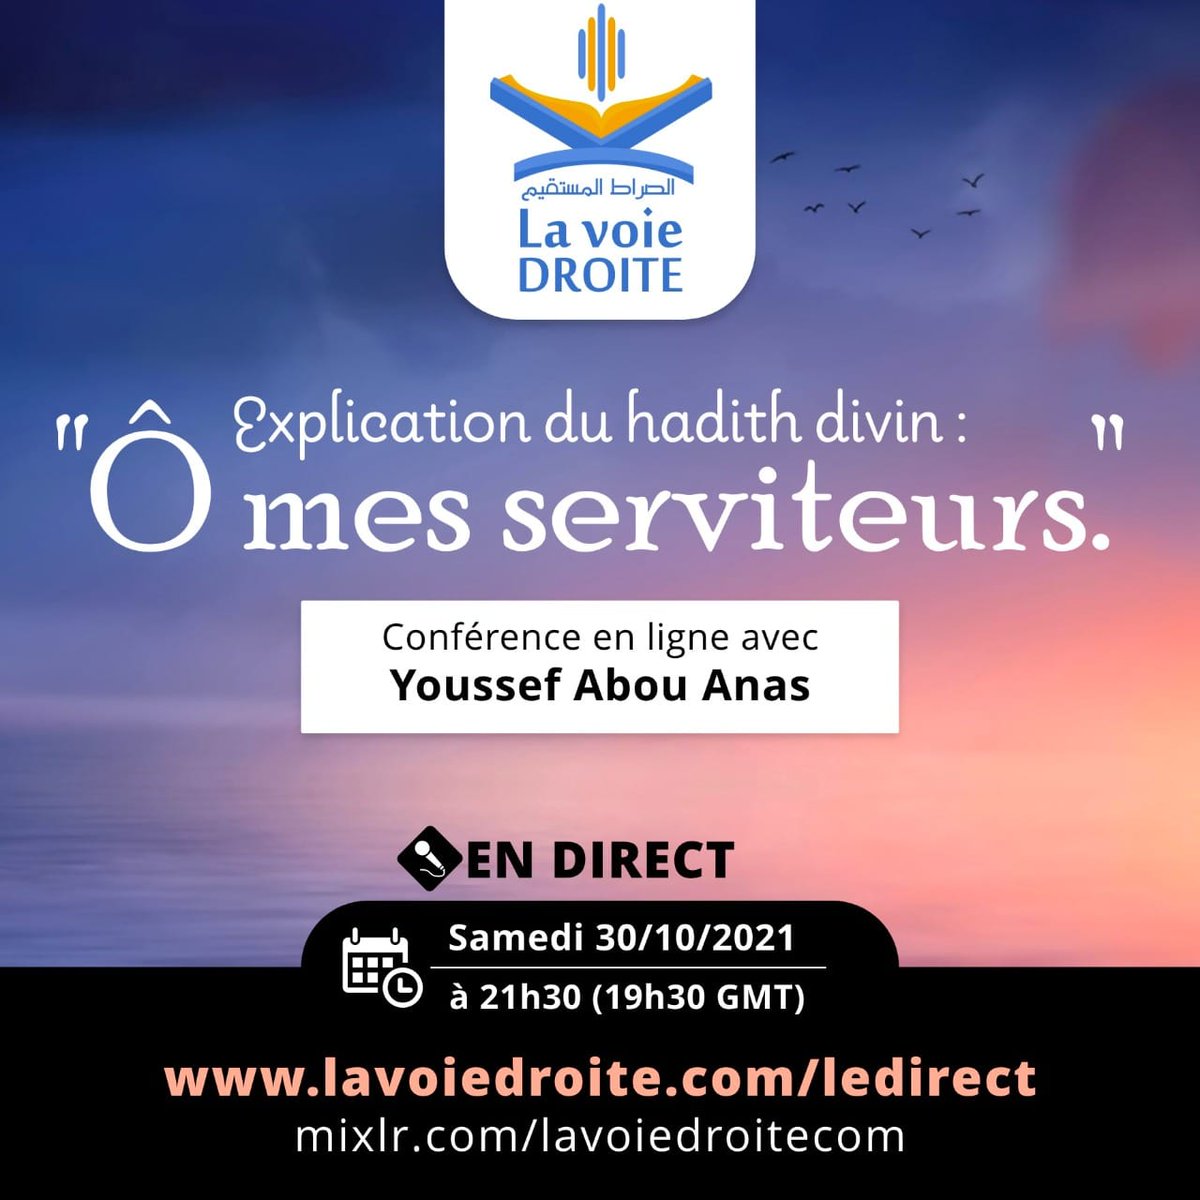 LaVoieDroite.com (@LaVoieDroite) / Twitter